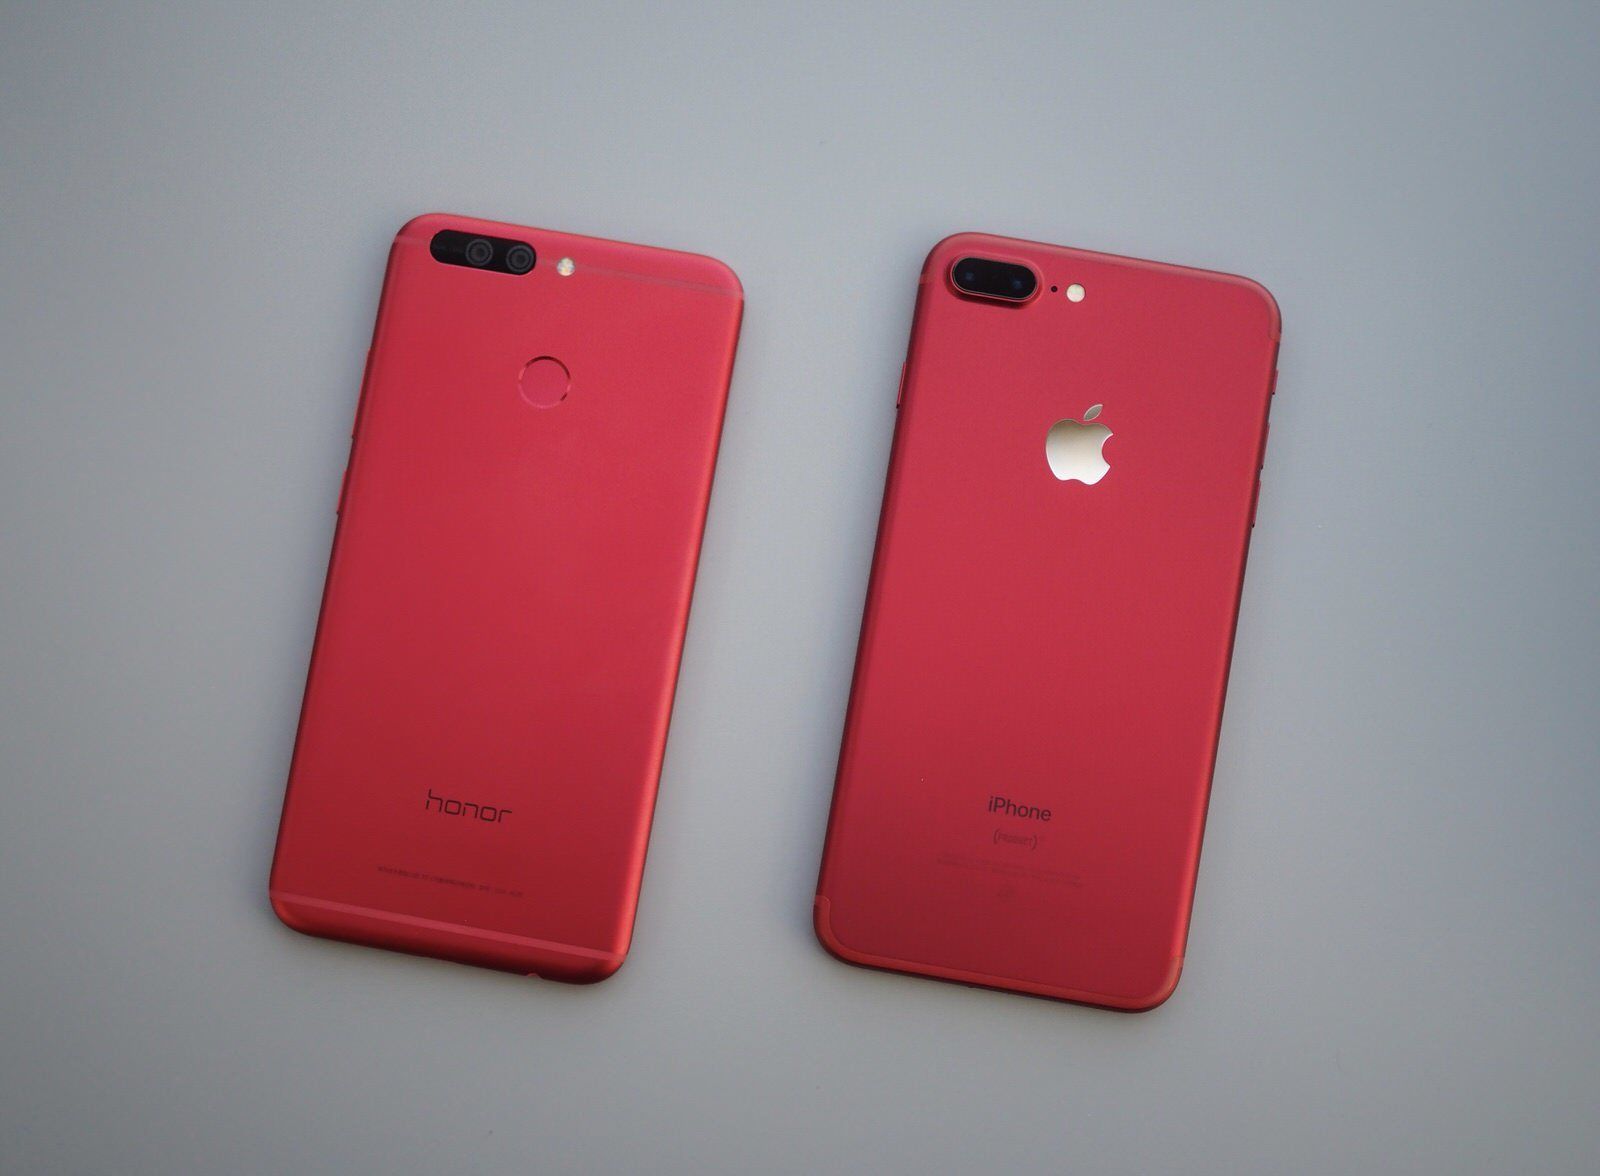 图赏 | 大红色 iPhone 7 Plus 来了,你们喜欢吗?